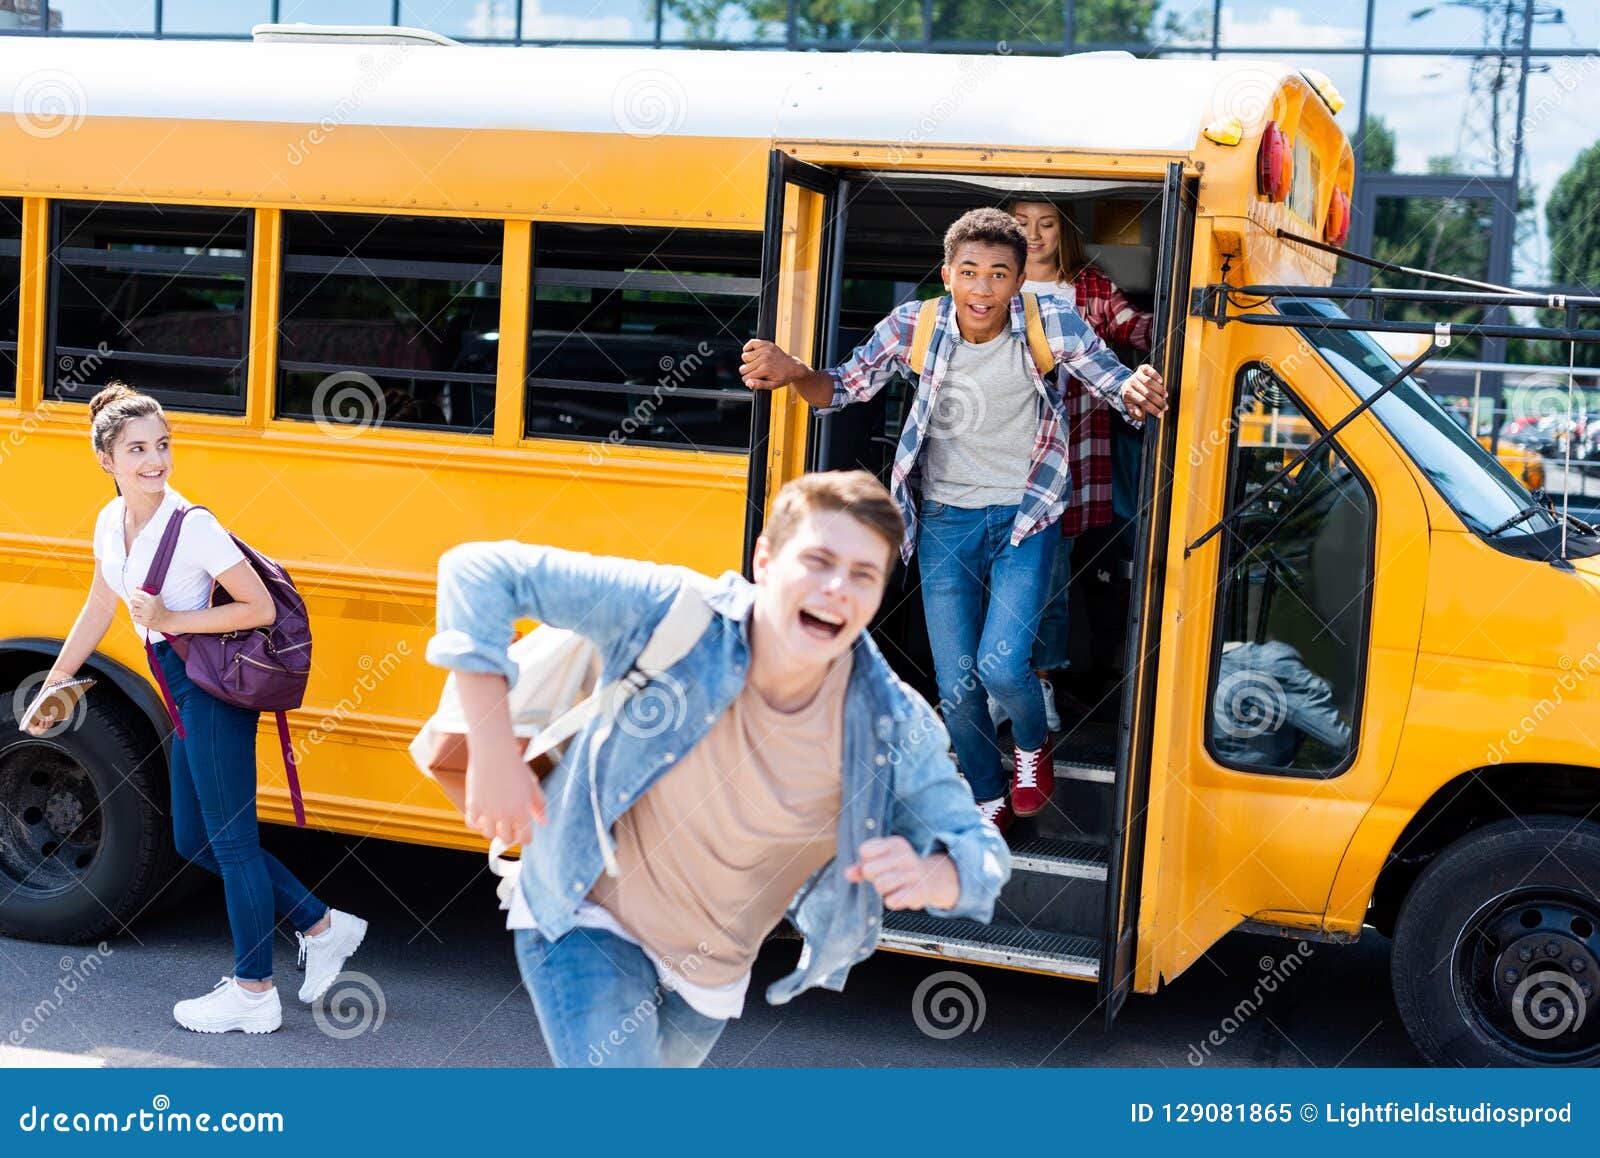 На остановке общественного транспорта подростки нецензурно